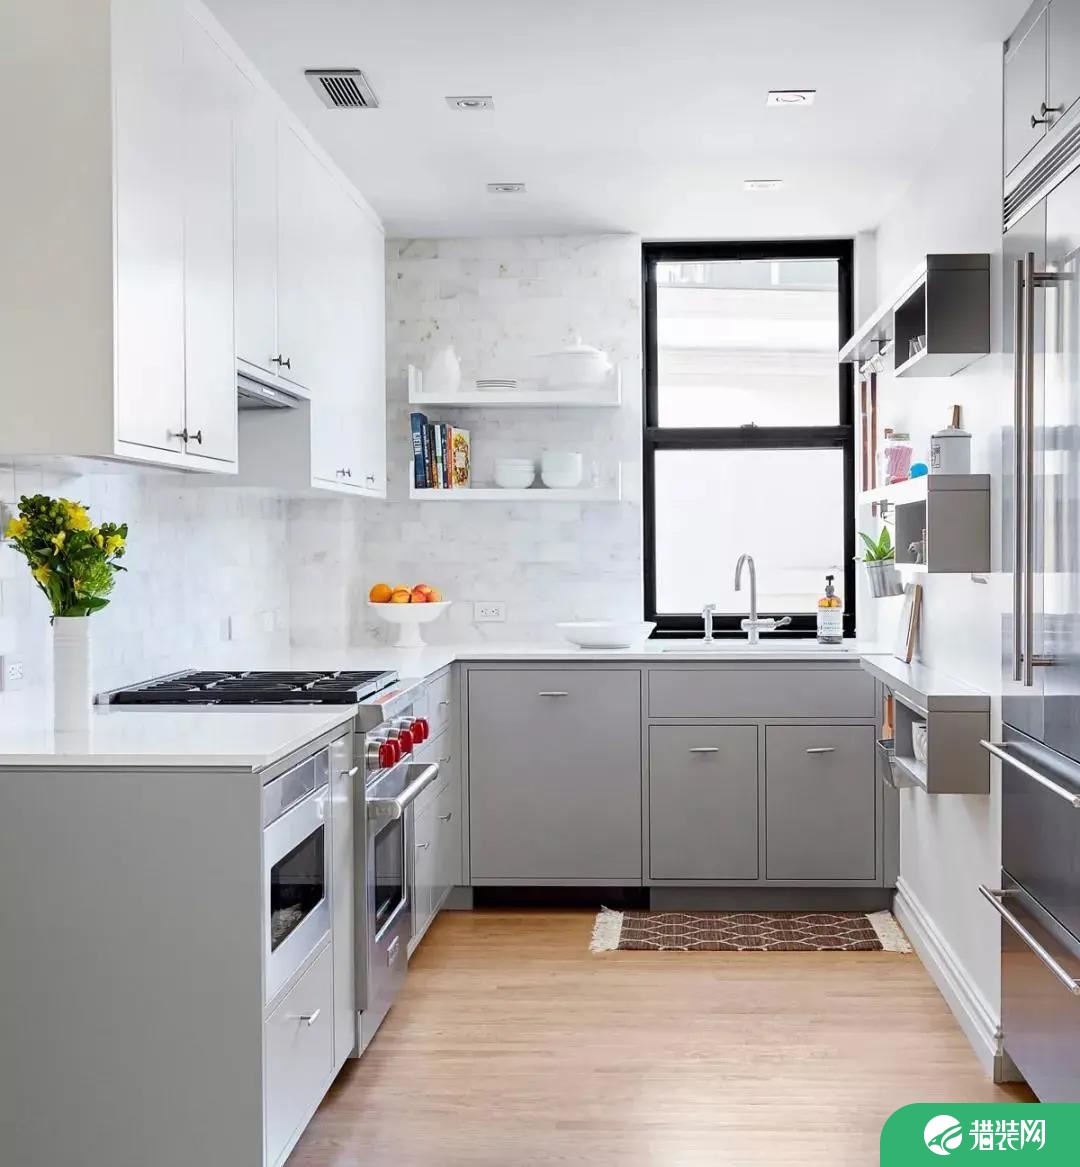 L型厨房设计要点有哪些 学会这几招轻松打造完美空间